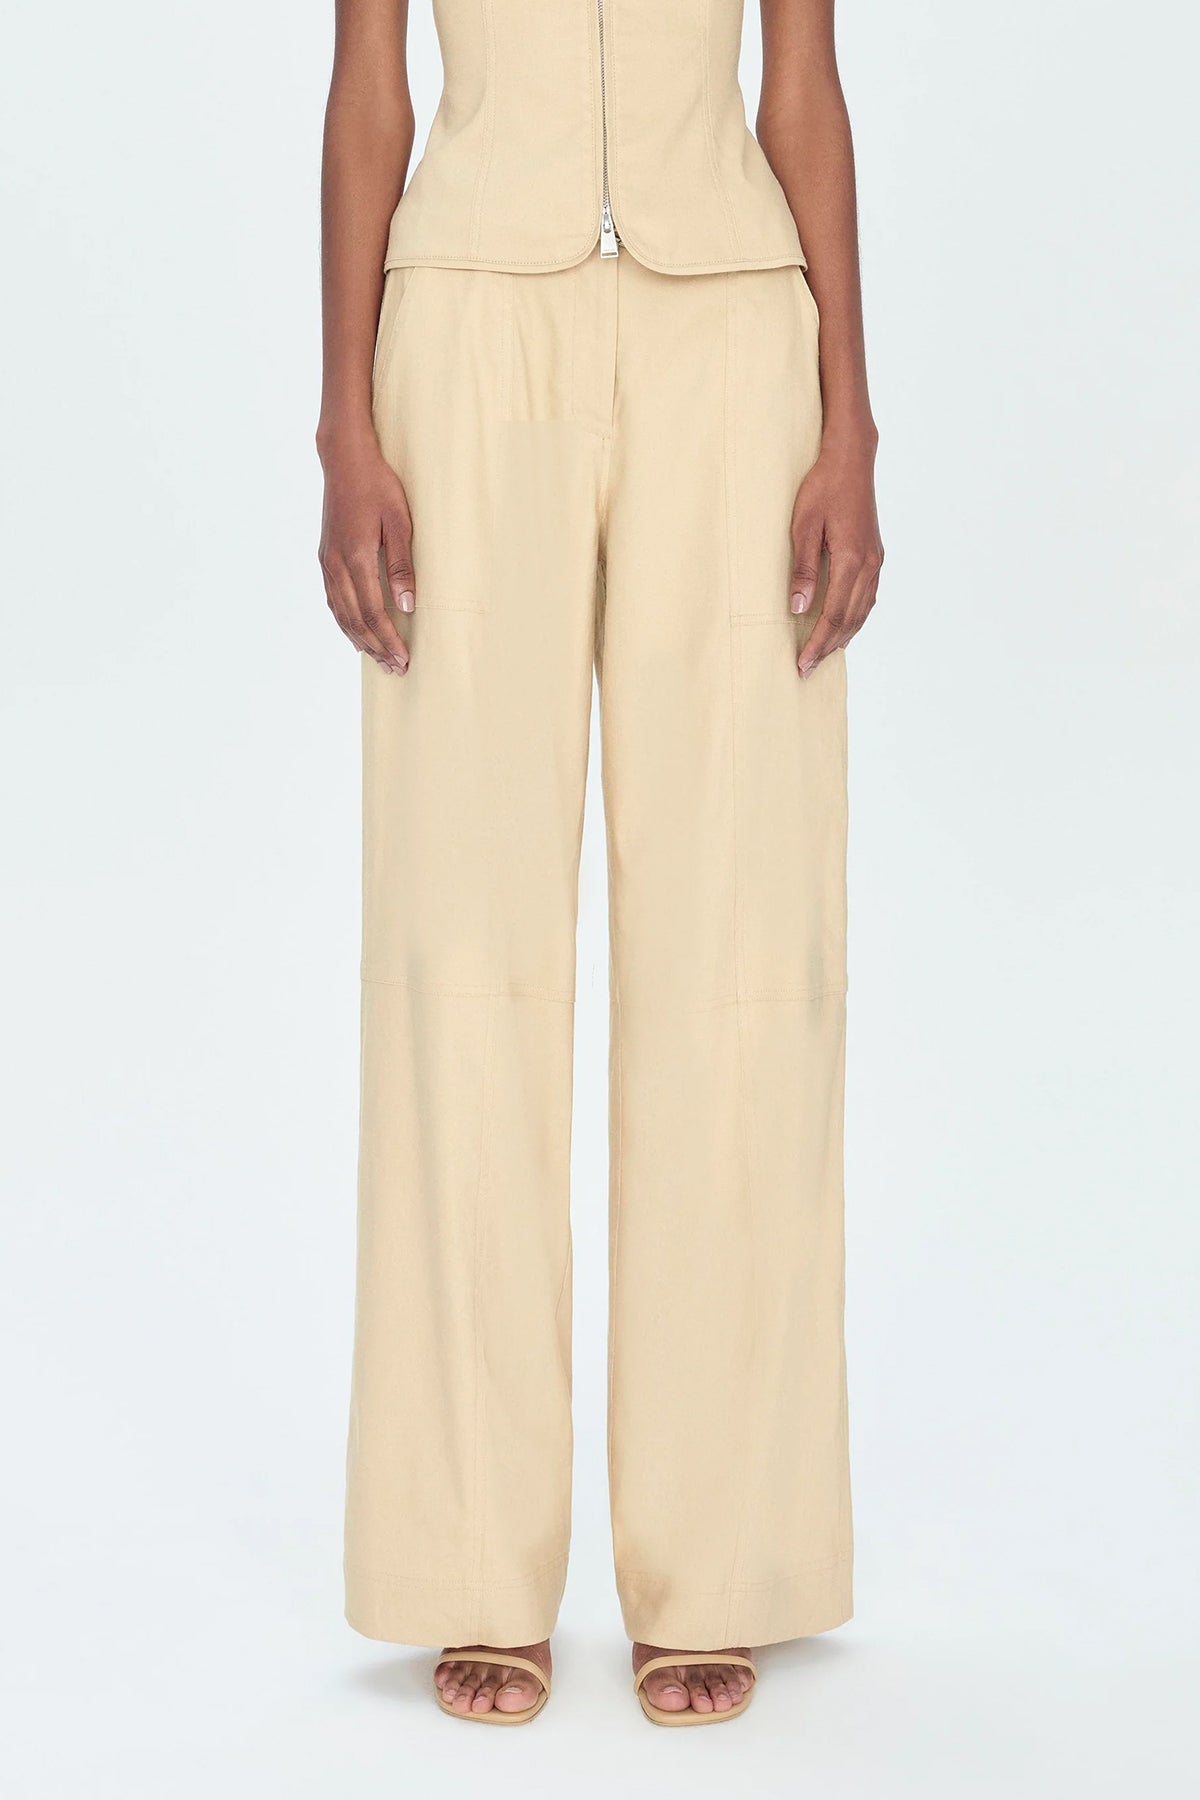 Amaya Belted Pants in Natural - shop-olivia.com